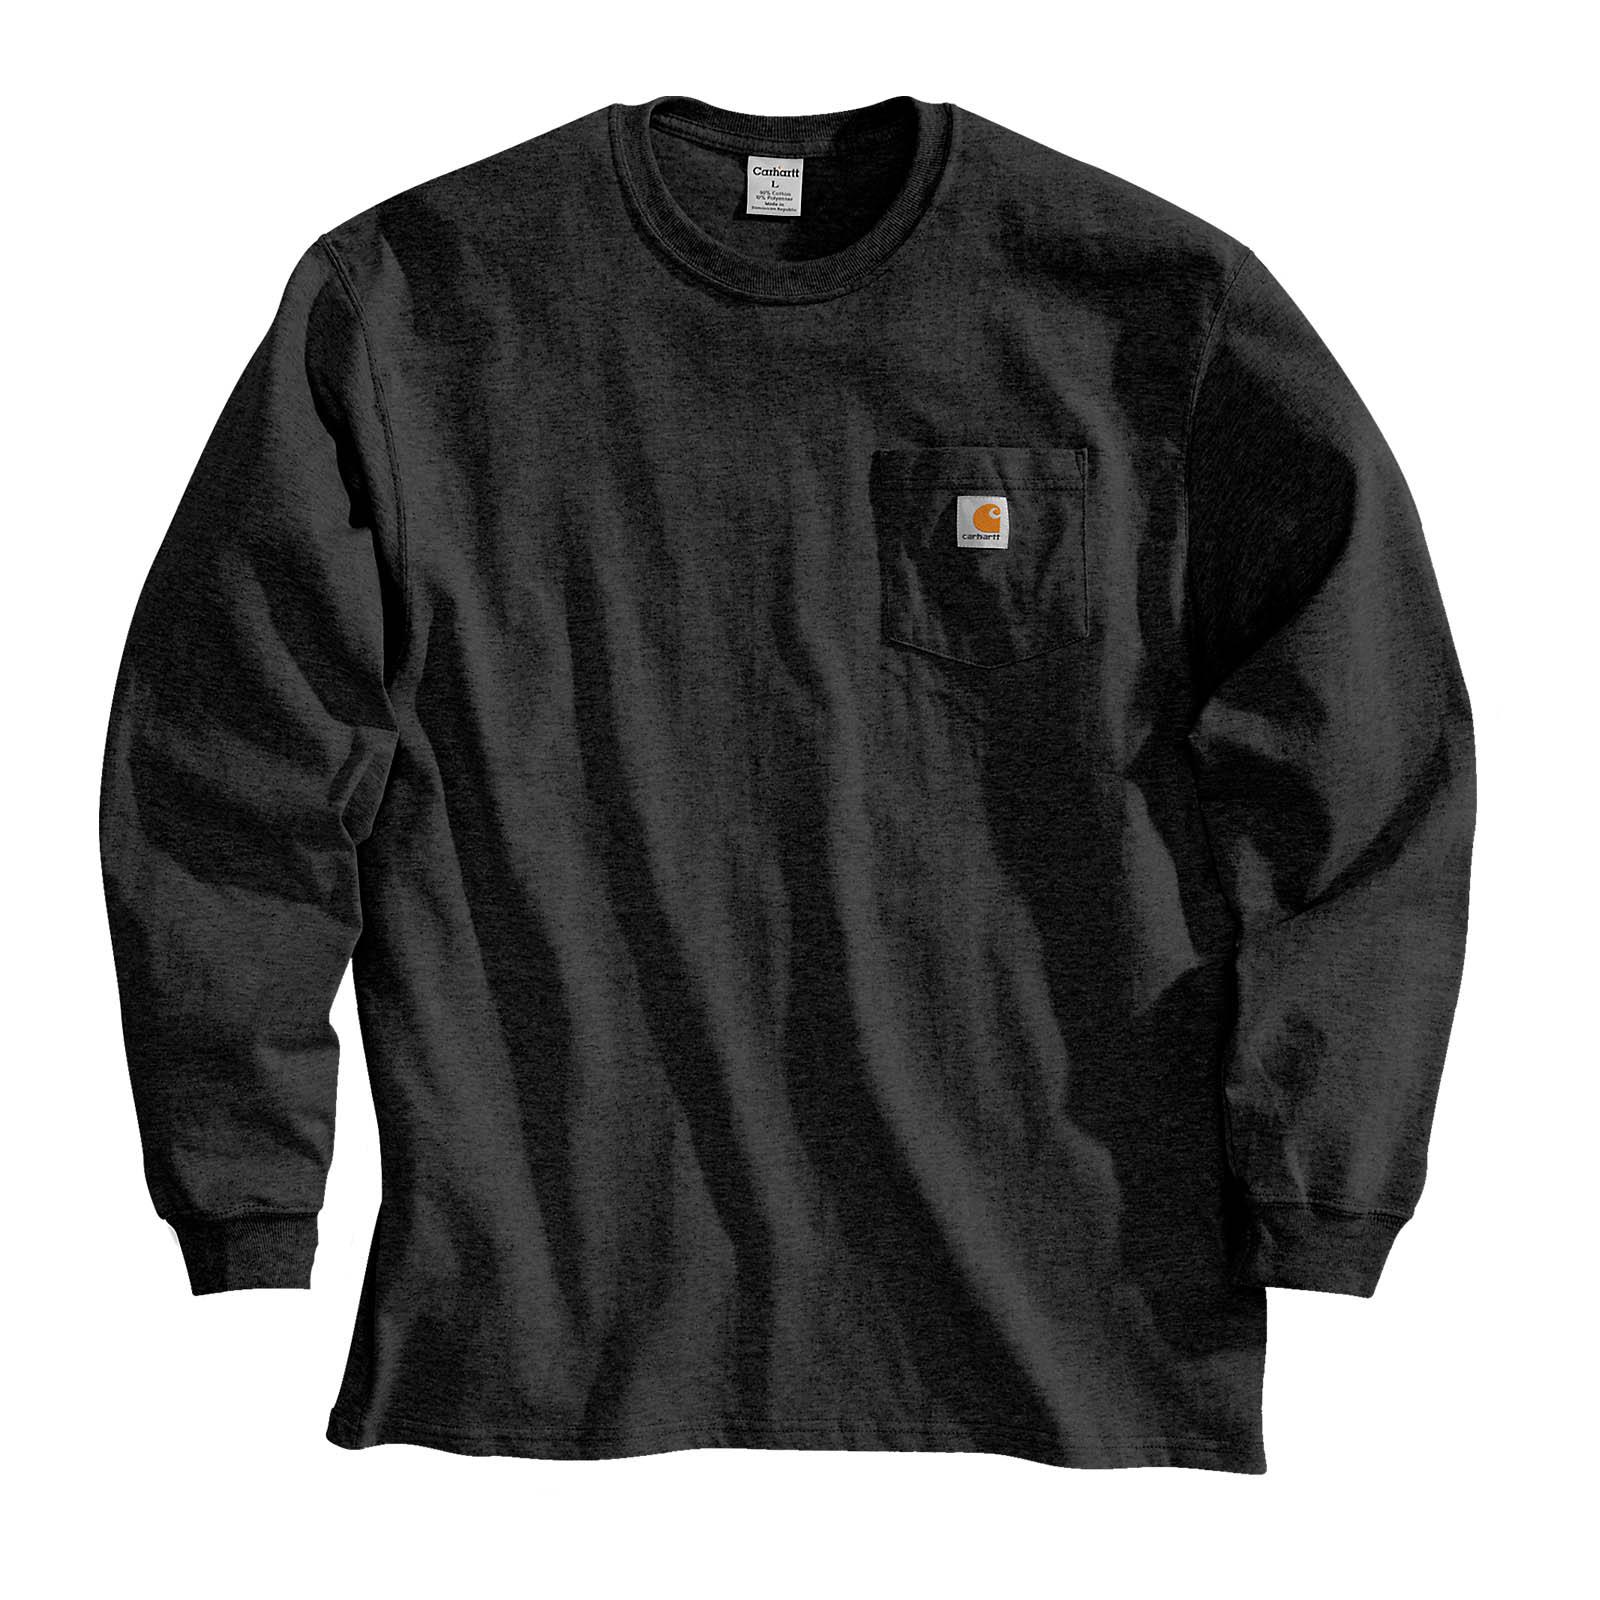 Carhartt Herren Sweatshirt Pullover Langarmshirt Workwear Pocket  Brusttasche | eBay